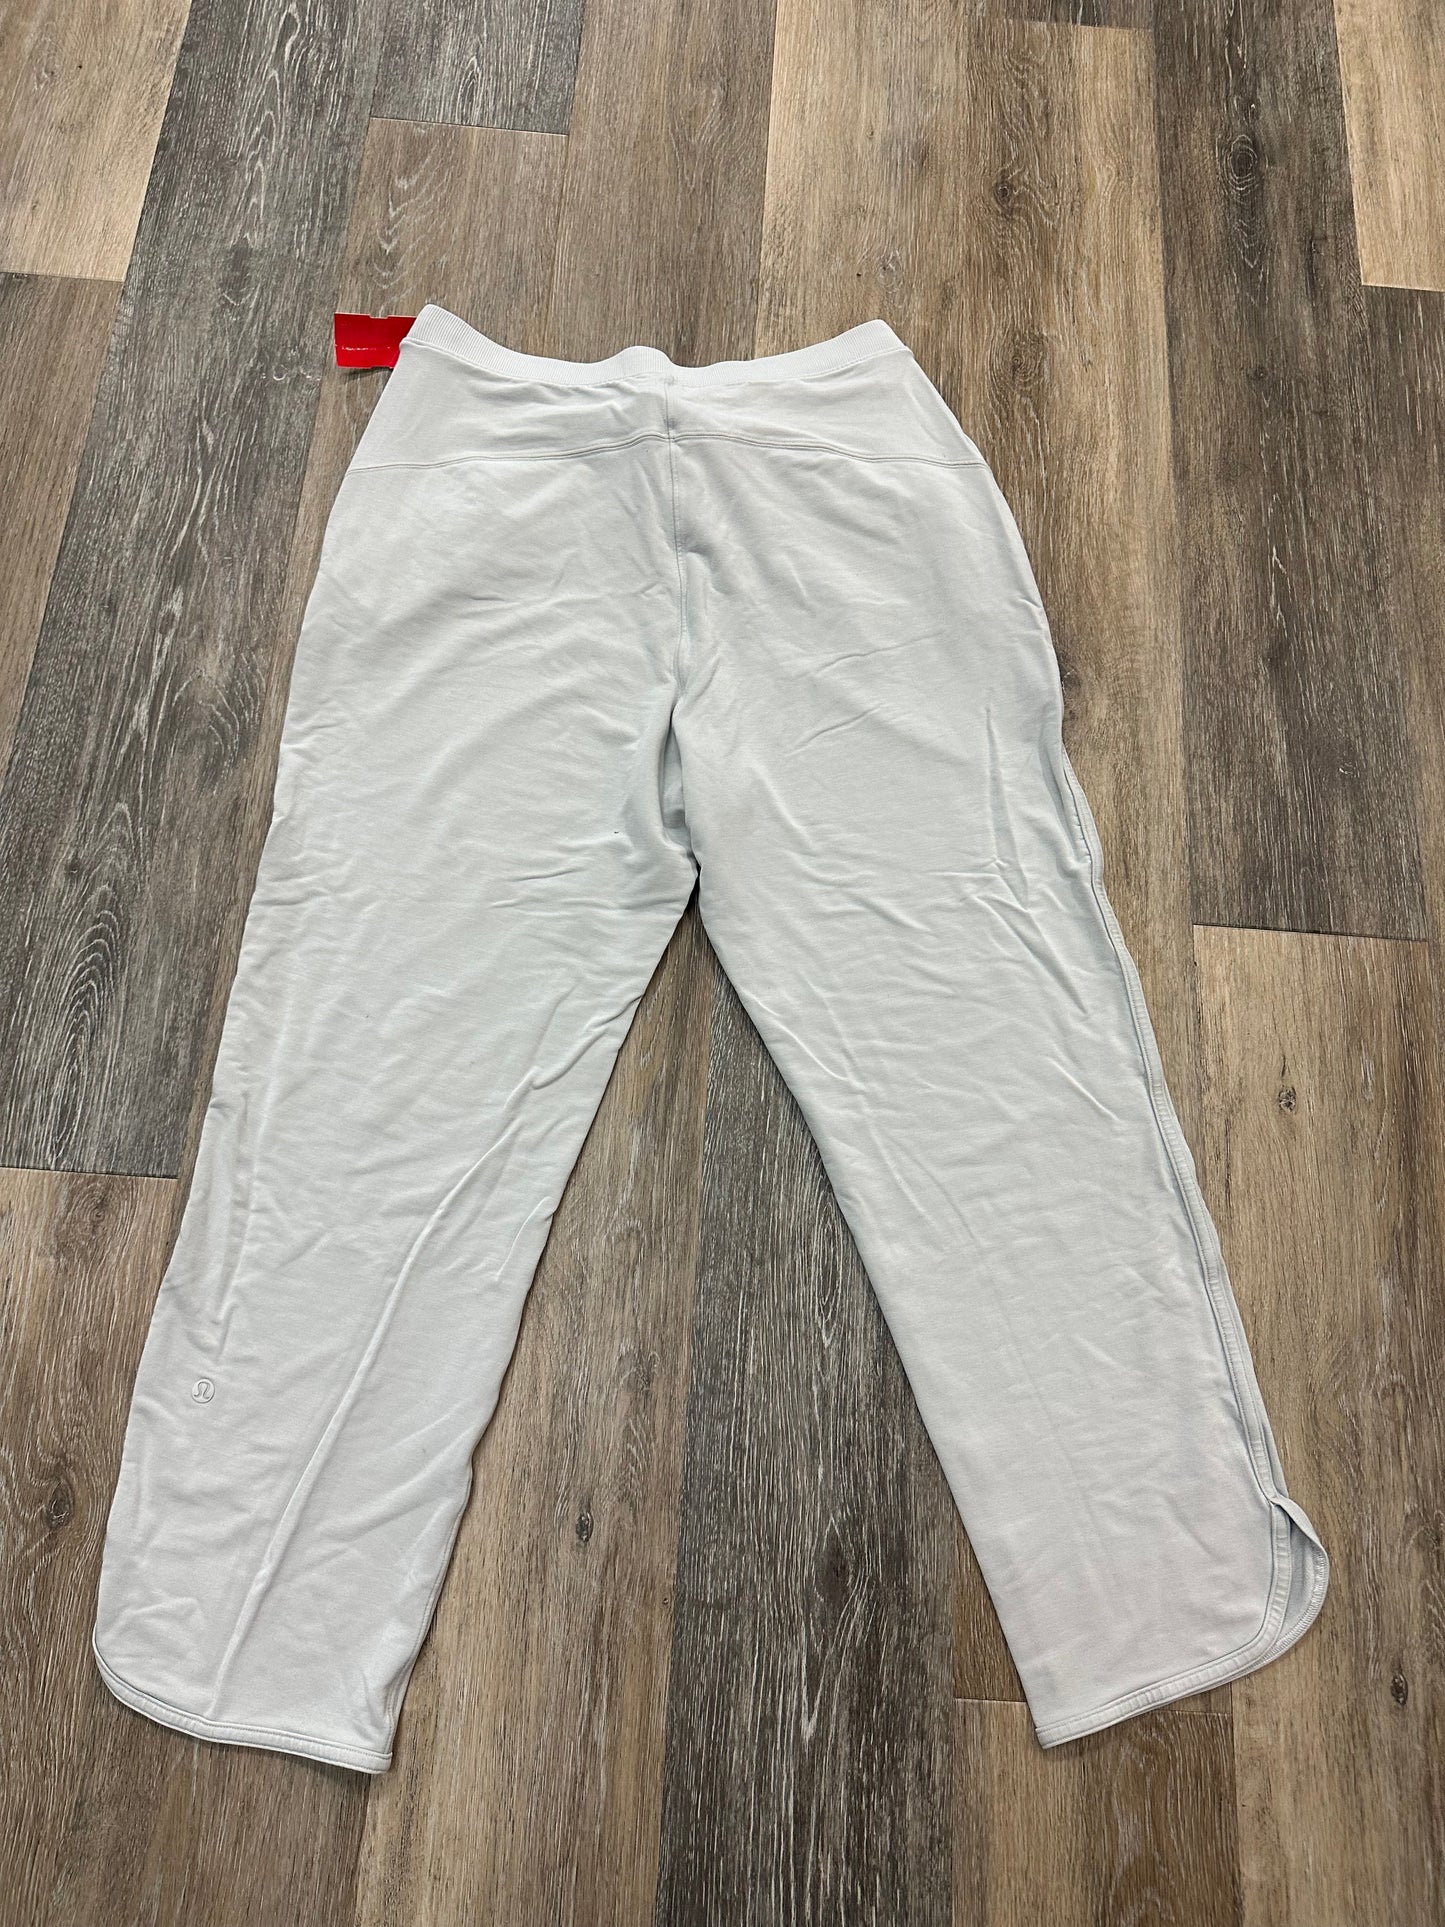 Grey Athletic Pants Lululemon, Size 10